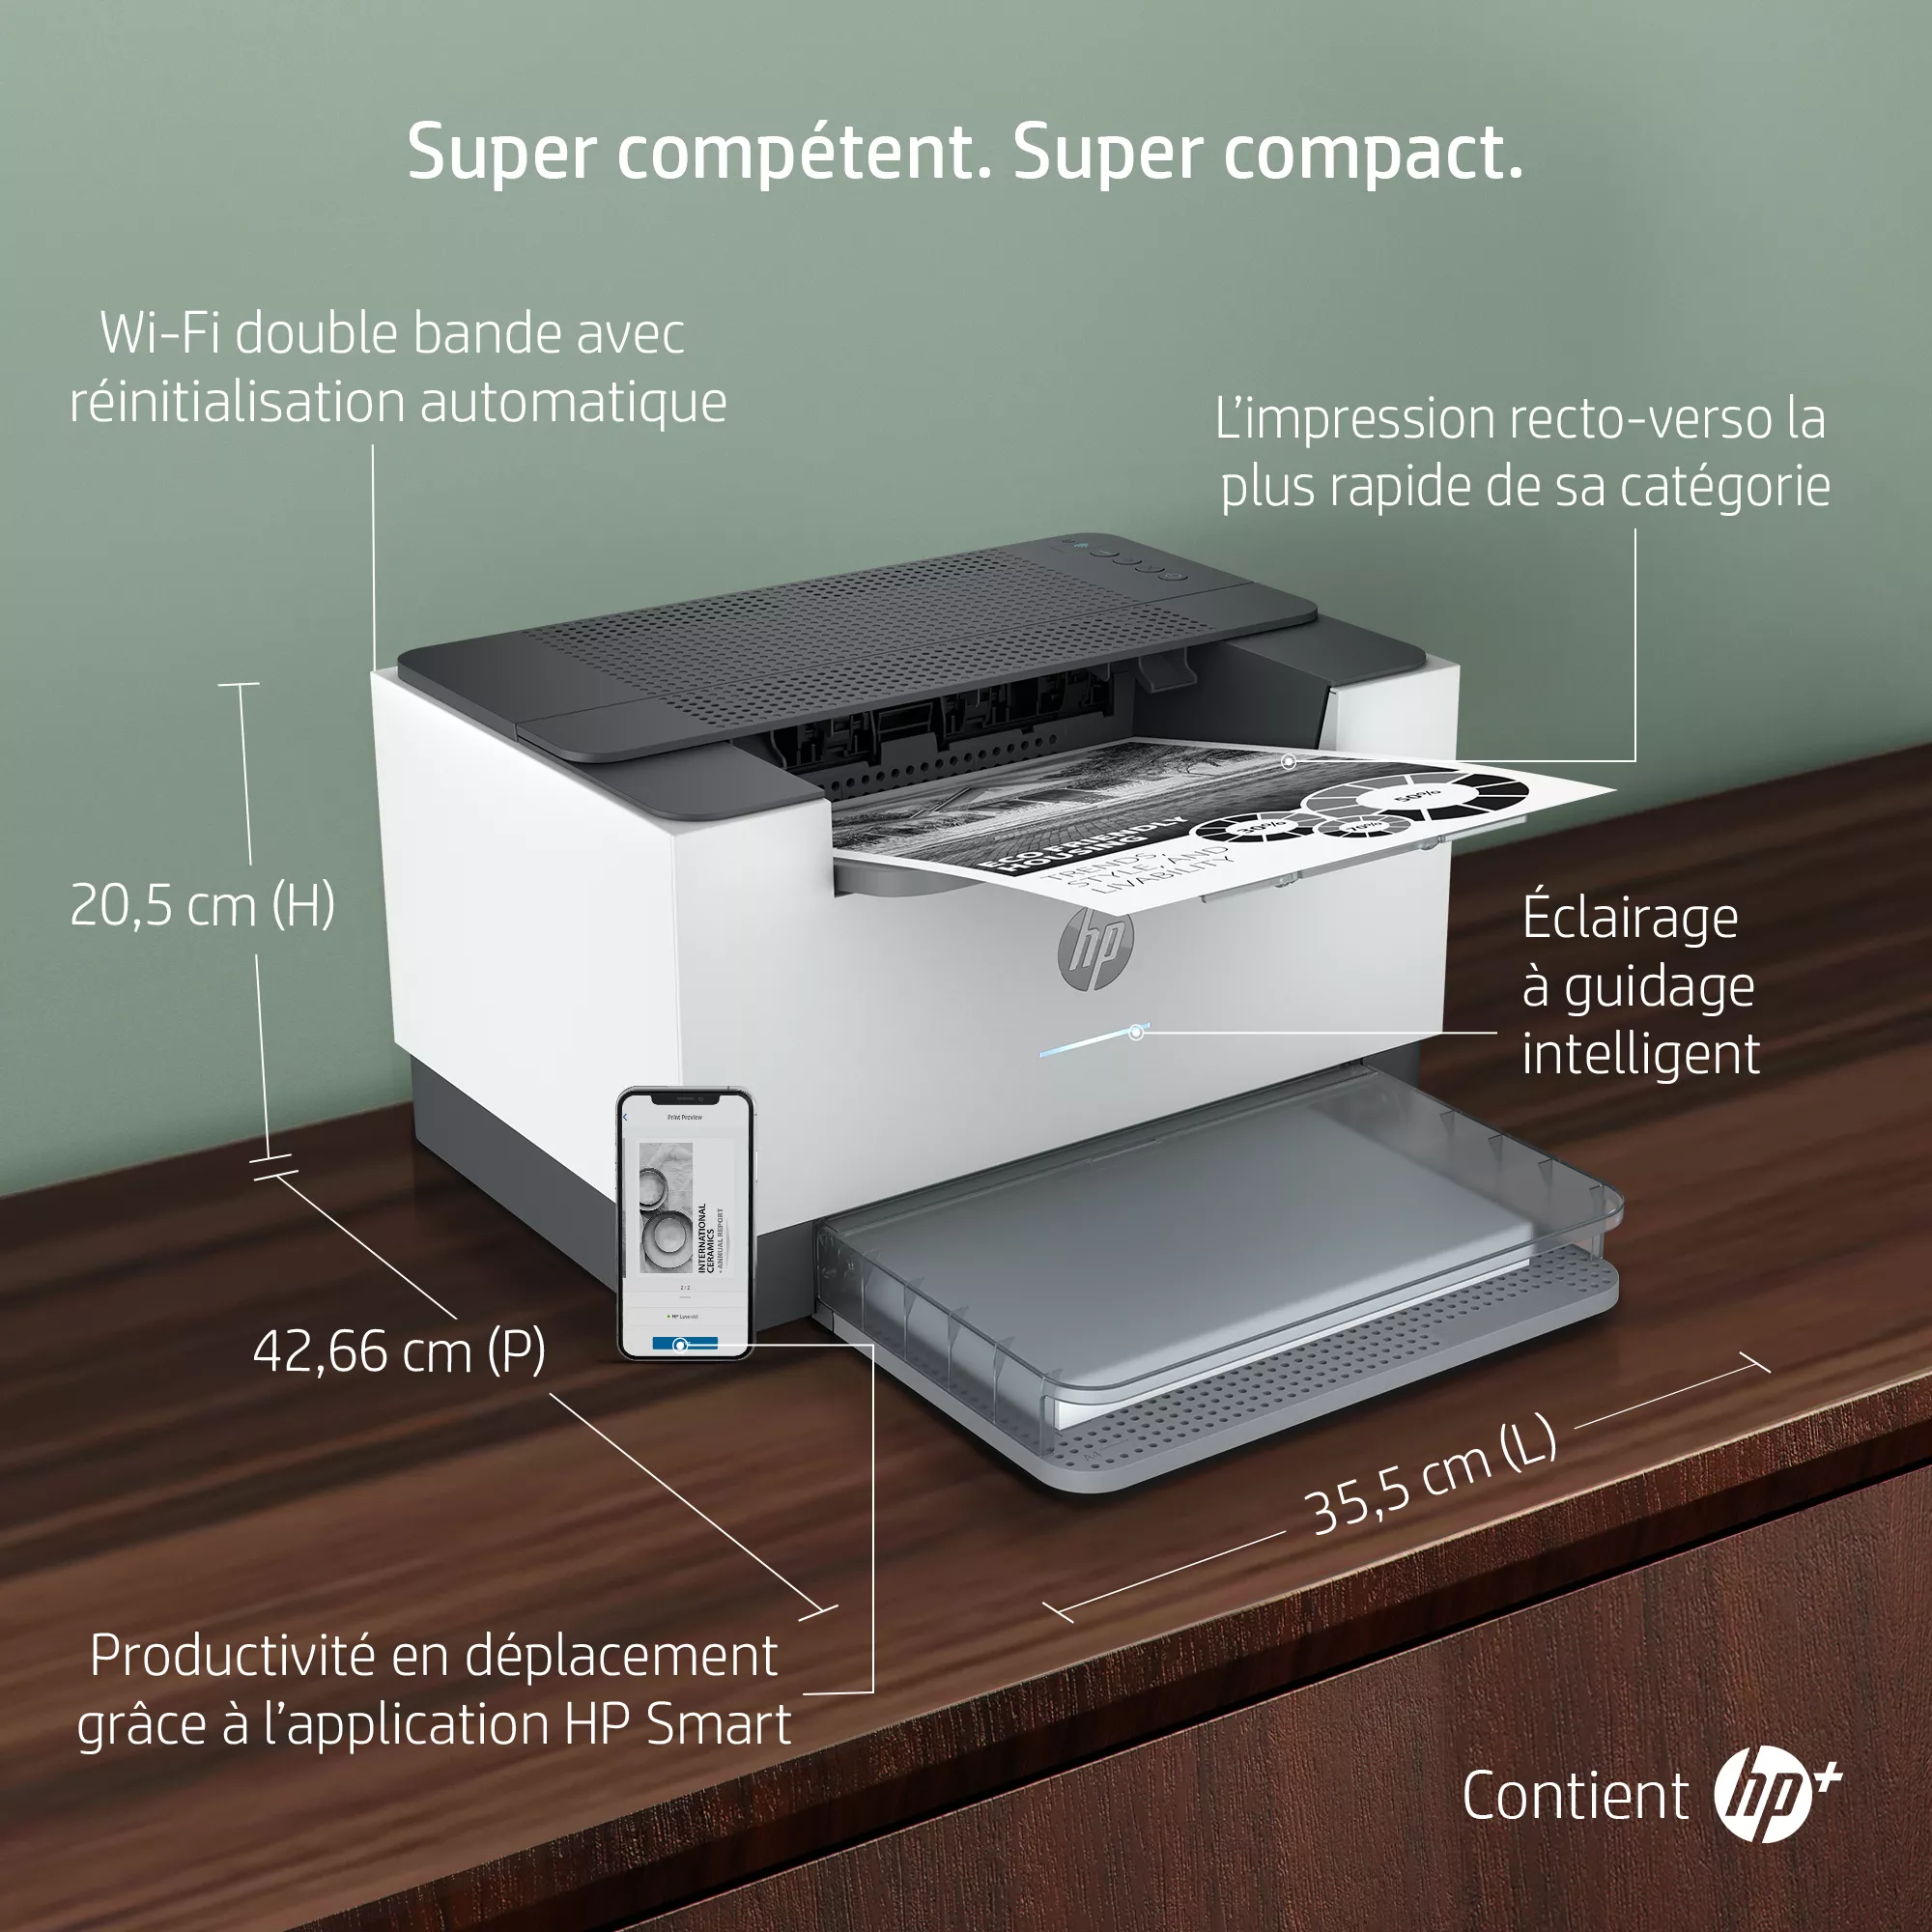 Imprimante HP LaserJet M209dwe, Noir et blanc, Imprimante HP - visuel 1 - hello RSE - + 6 mois de toner t inclus avec le forfait d’impression Instant Ink<sup>[11]</sup>